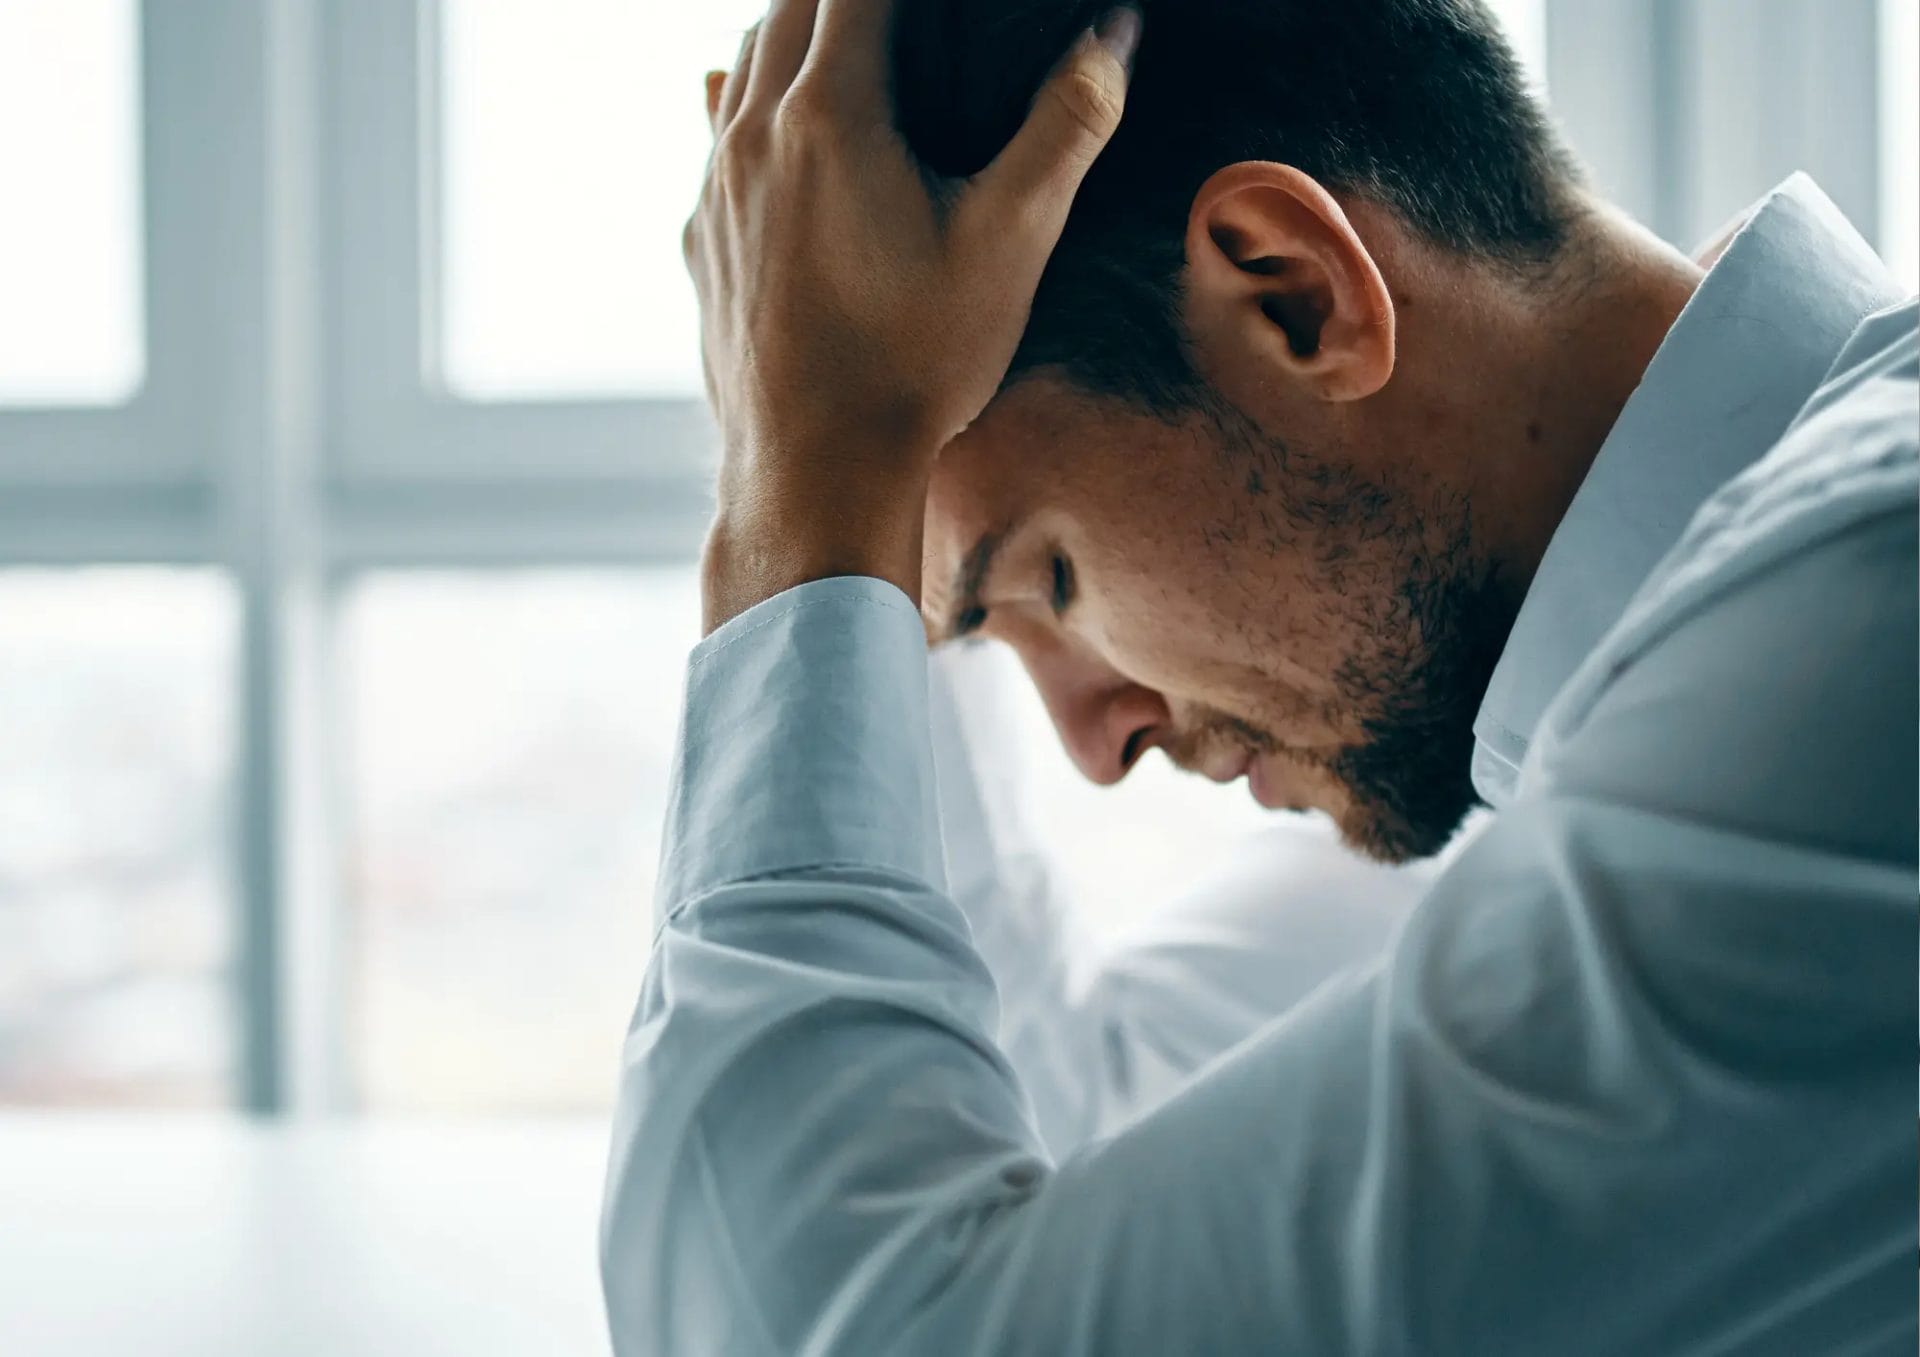 stres dan tekanan emosional dapat menjadi penyebab sulit ereksi pada pria muda